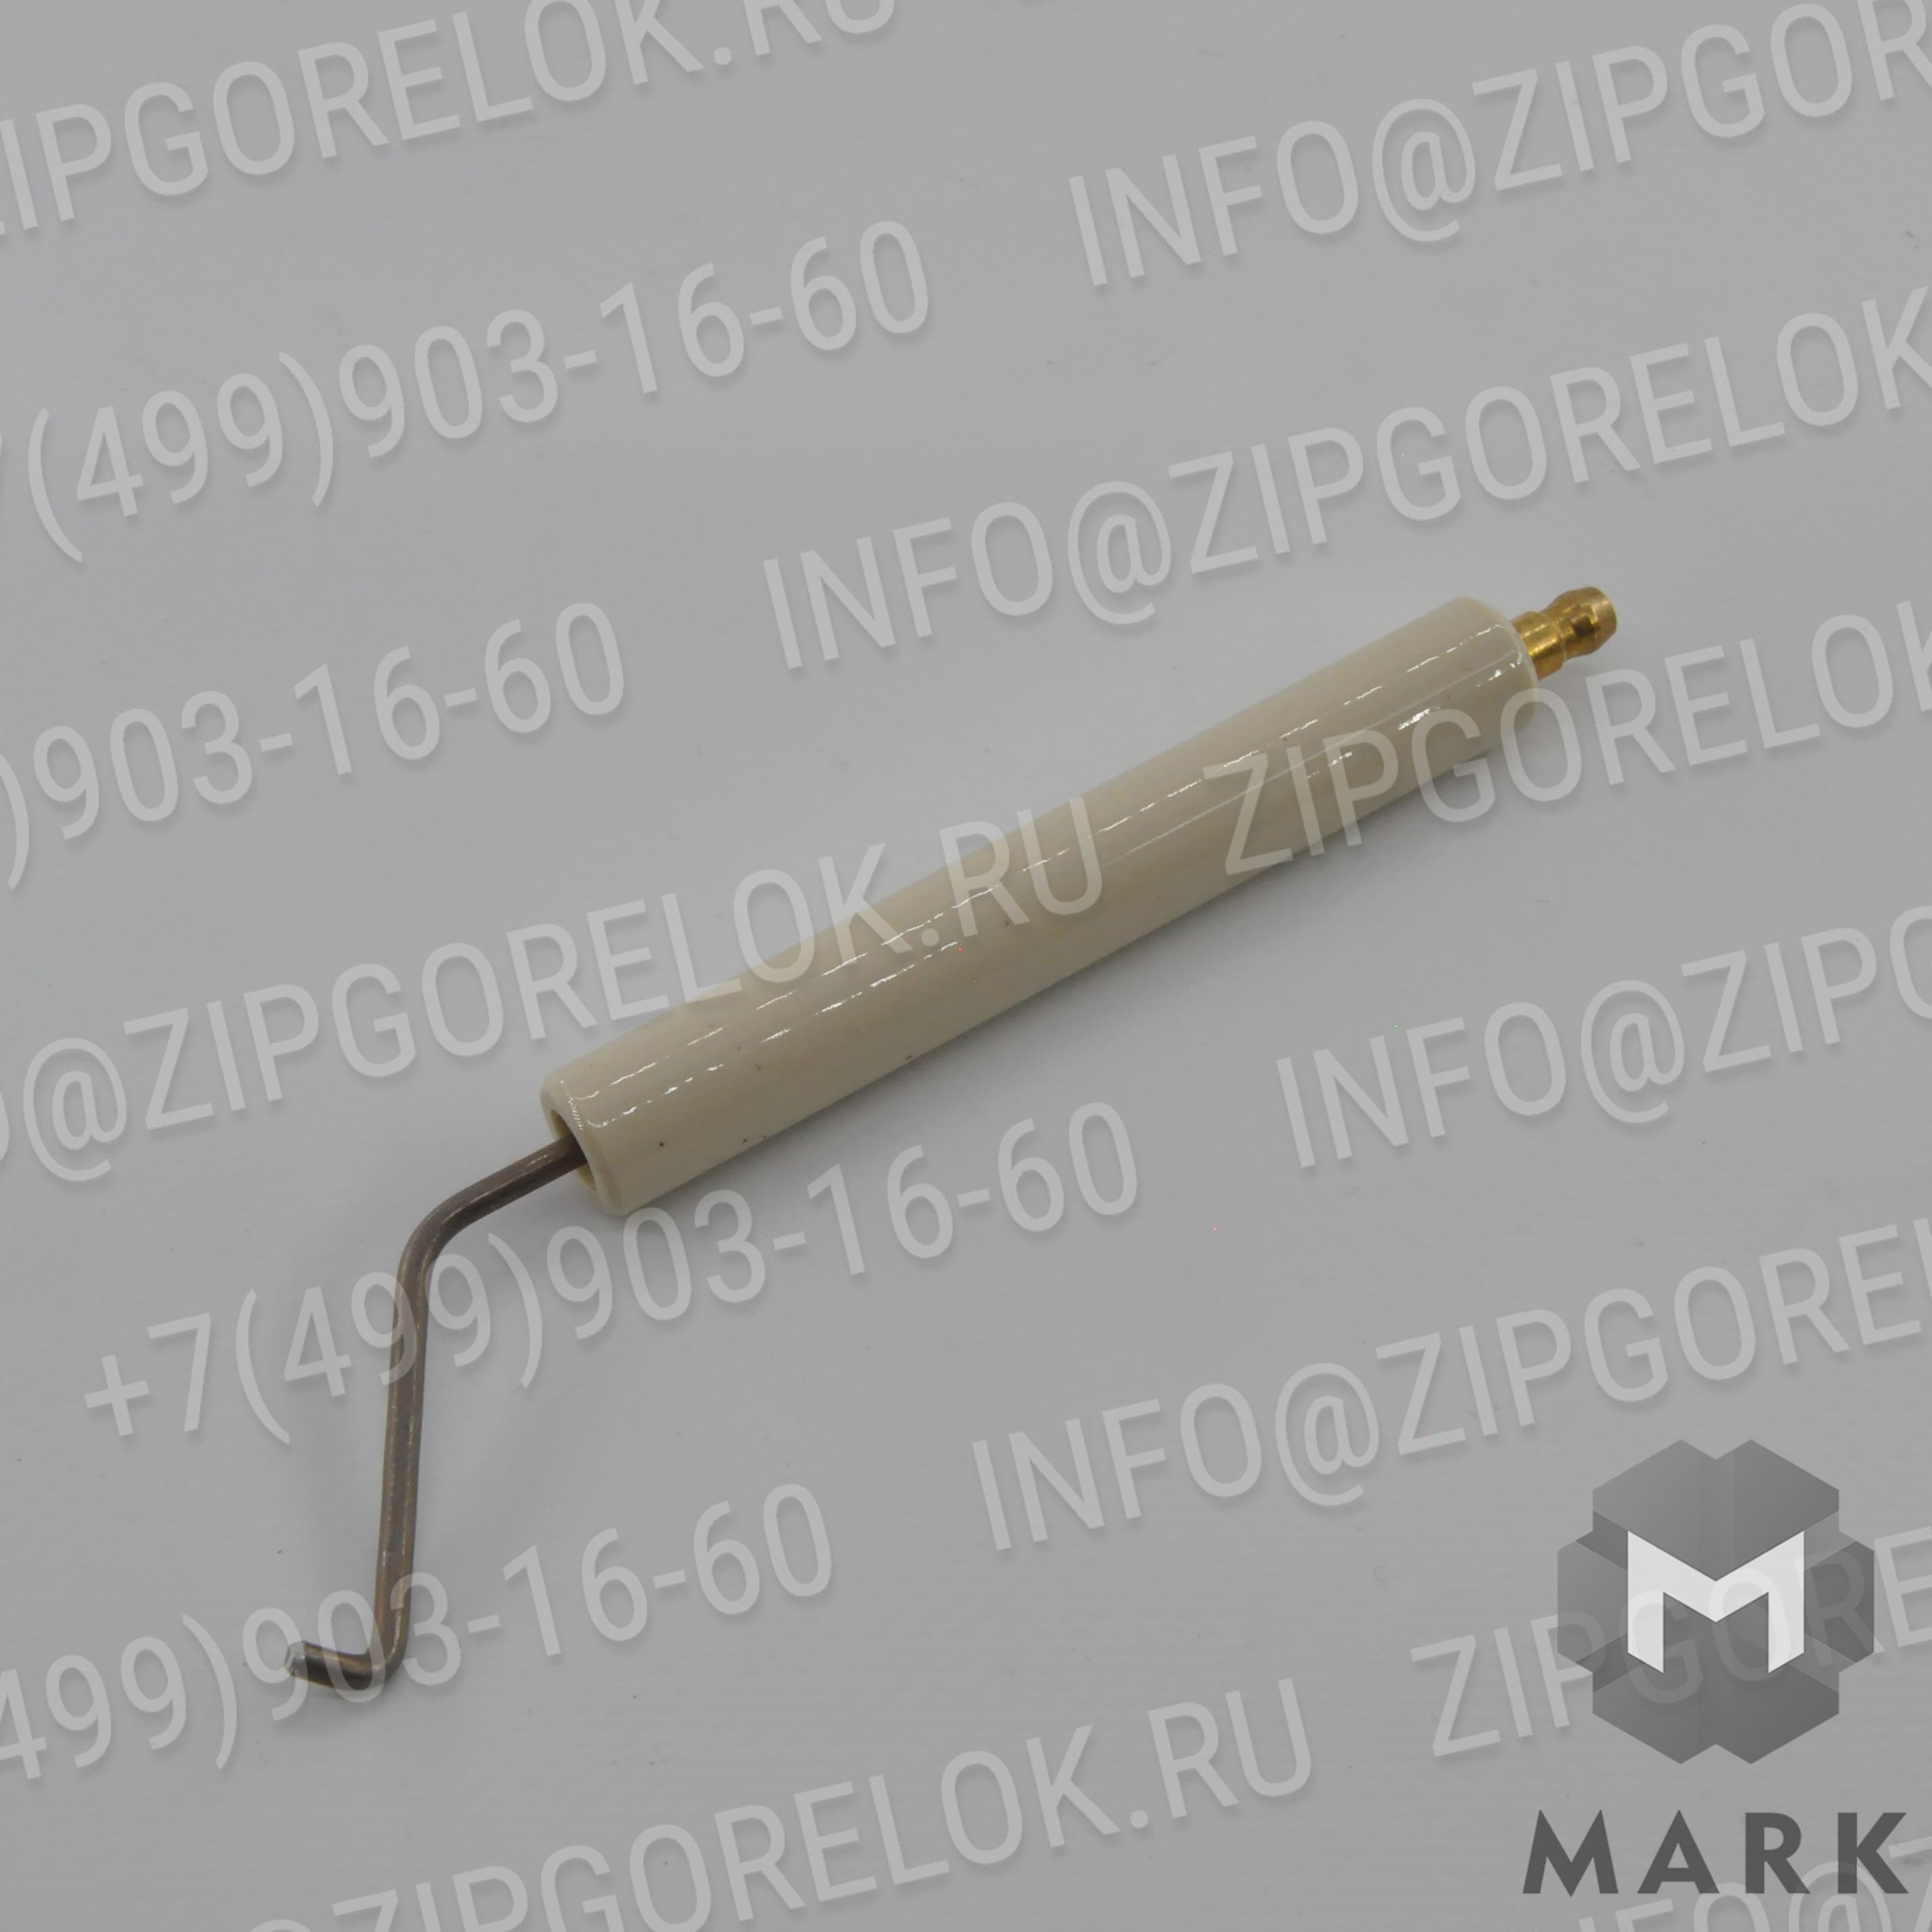 27880411057 Купить Электрод зажигания левый для горелок  WKGL80/1-A-3LN, арт. 27880411057 (We27880411057), Weishaupt (Вайсхаупт) | Zipgorelok.ru